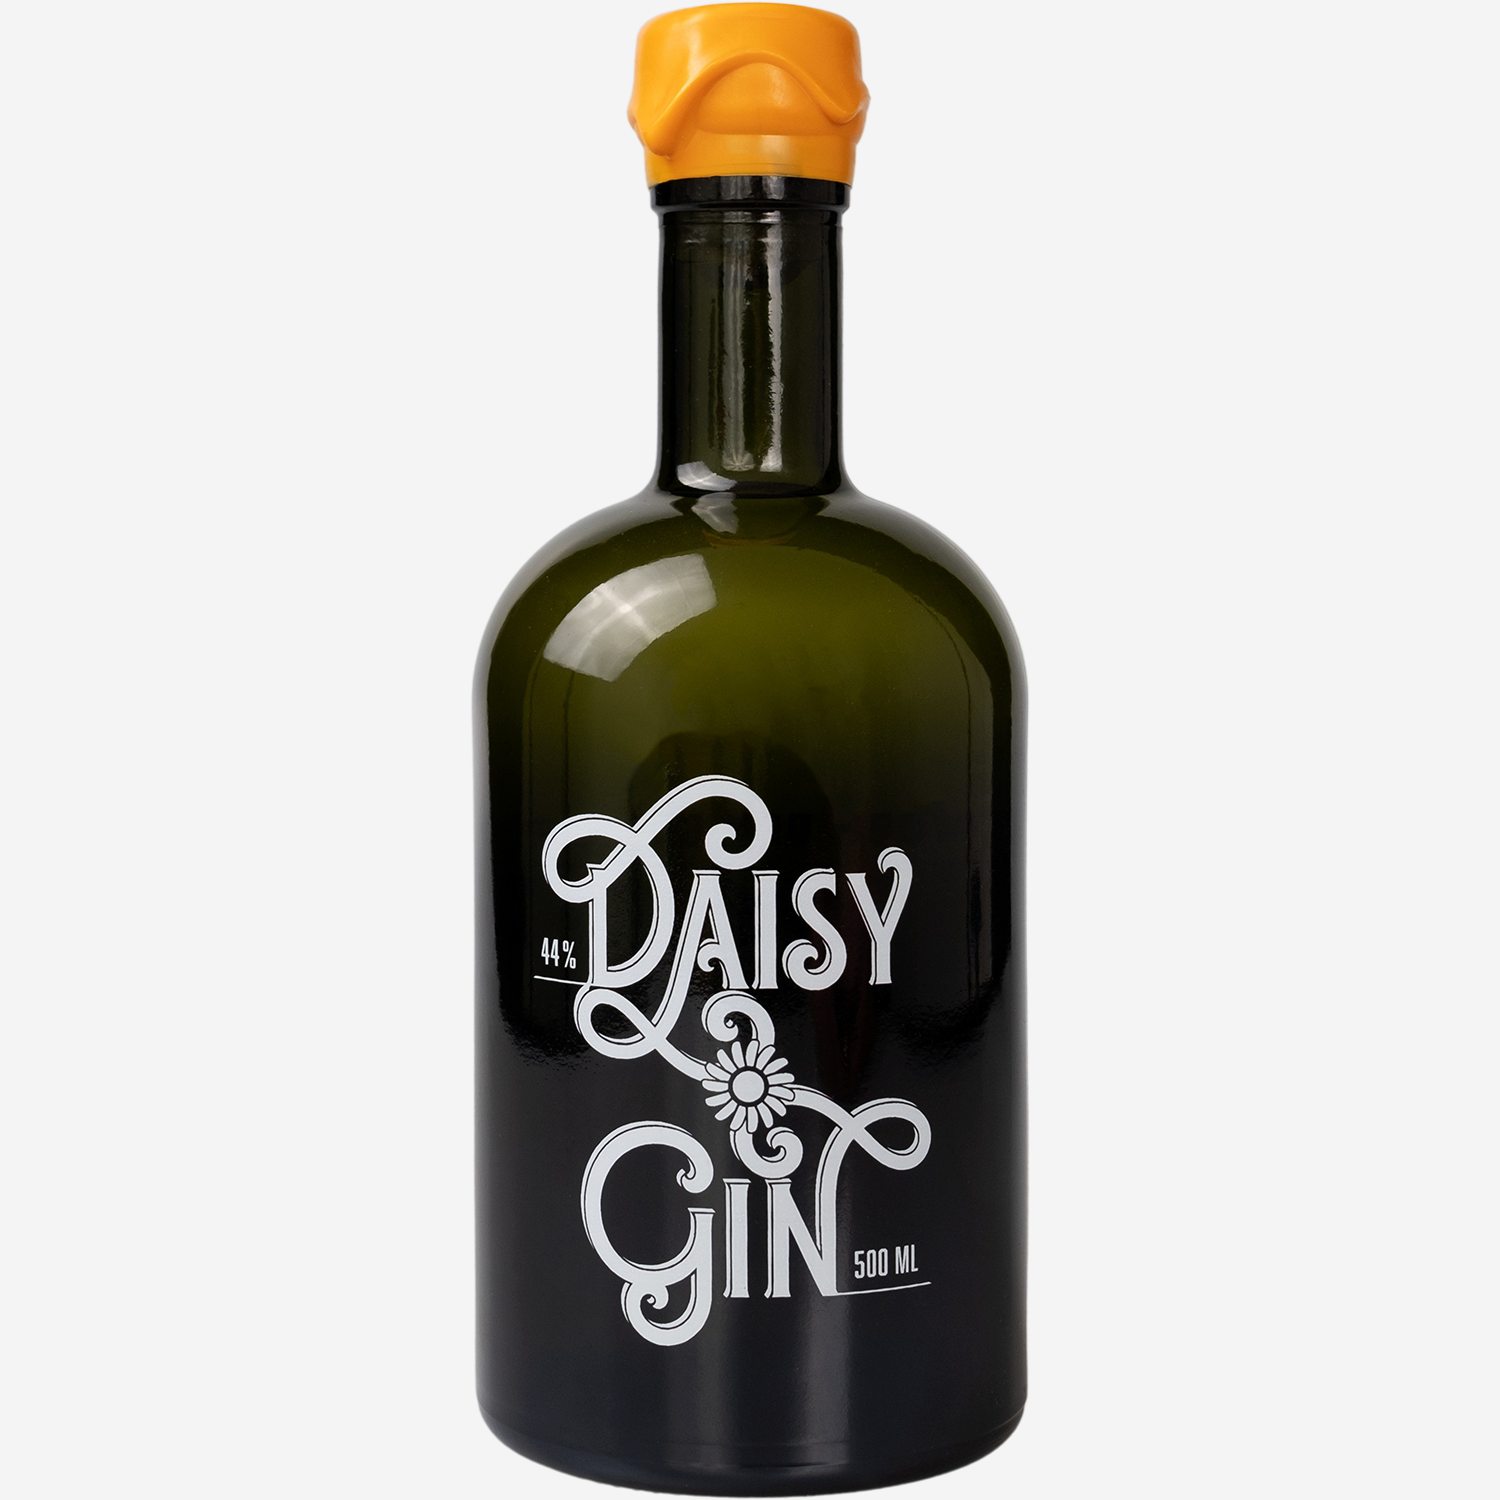 Daisy Gin - Organic London Dry Gin